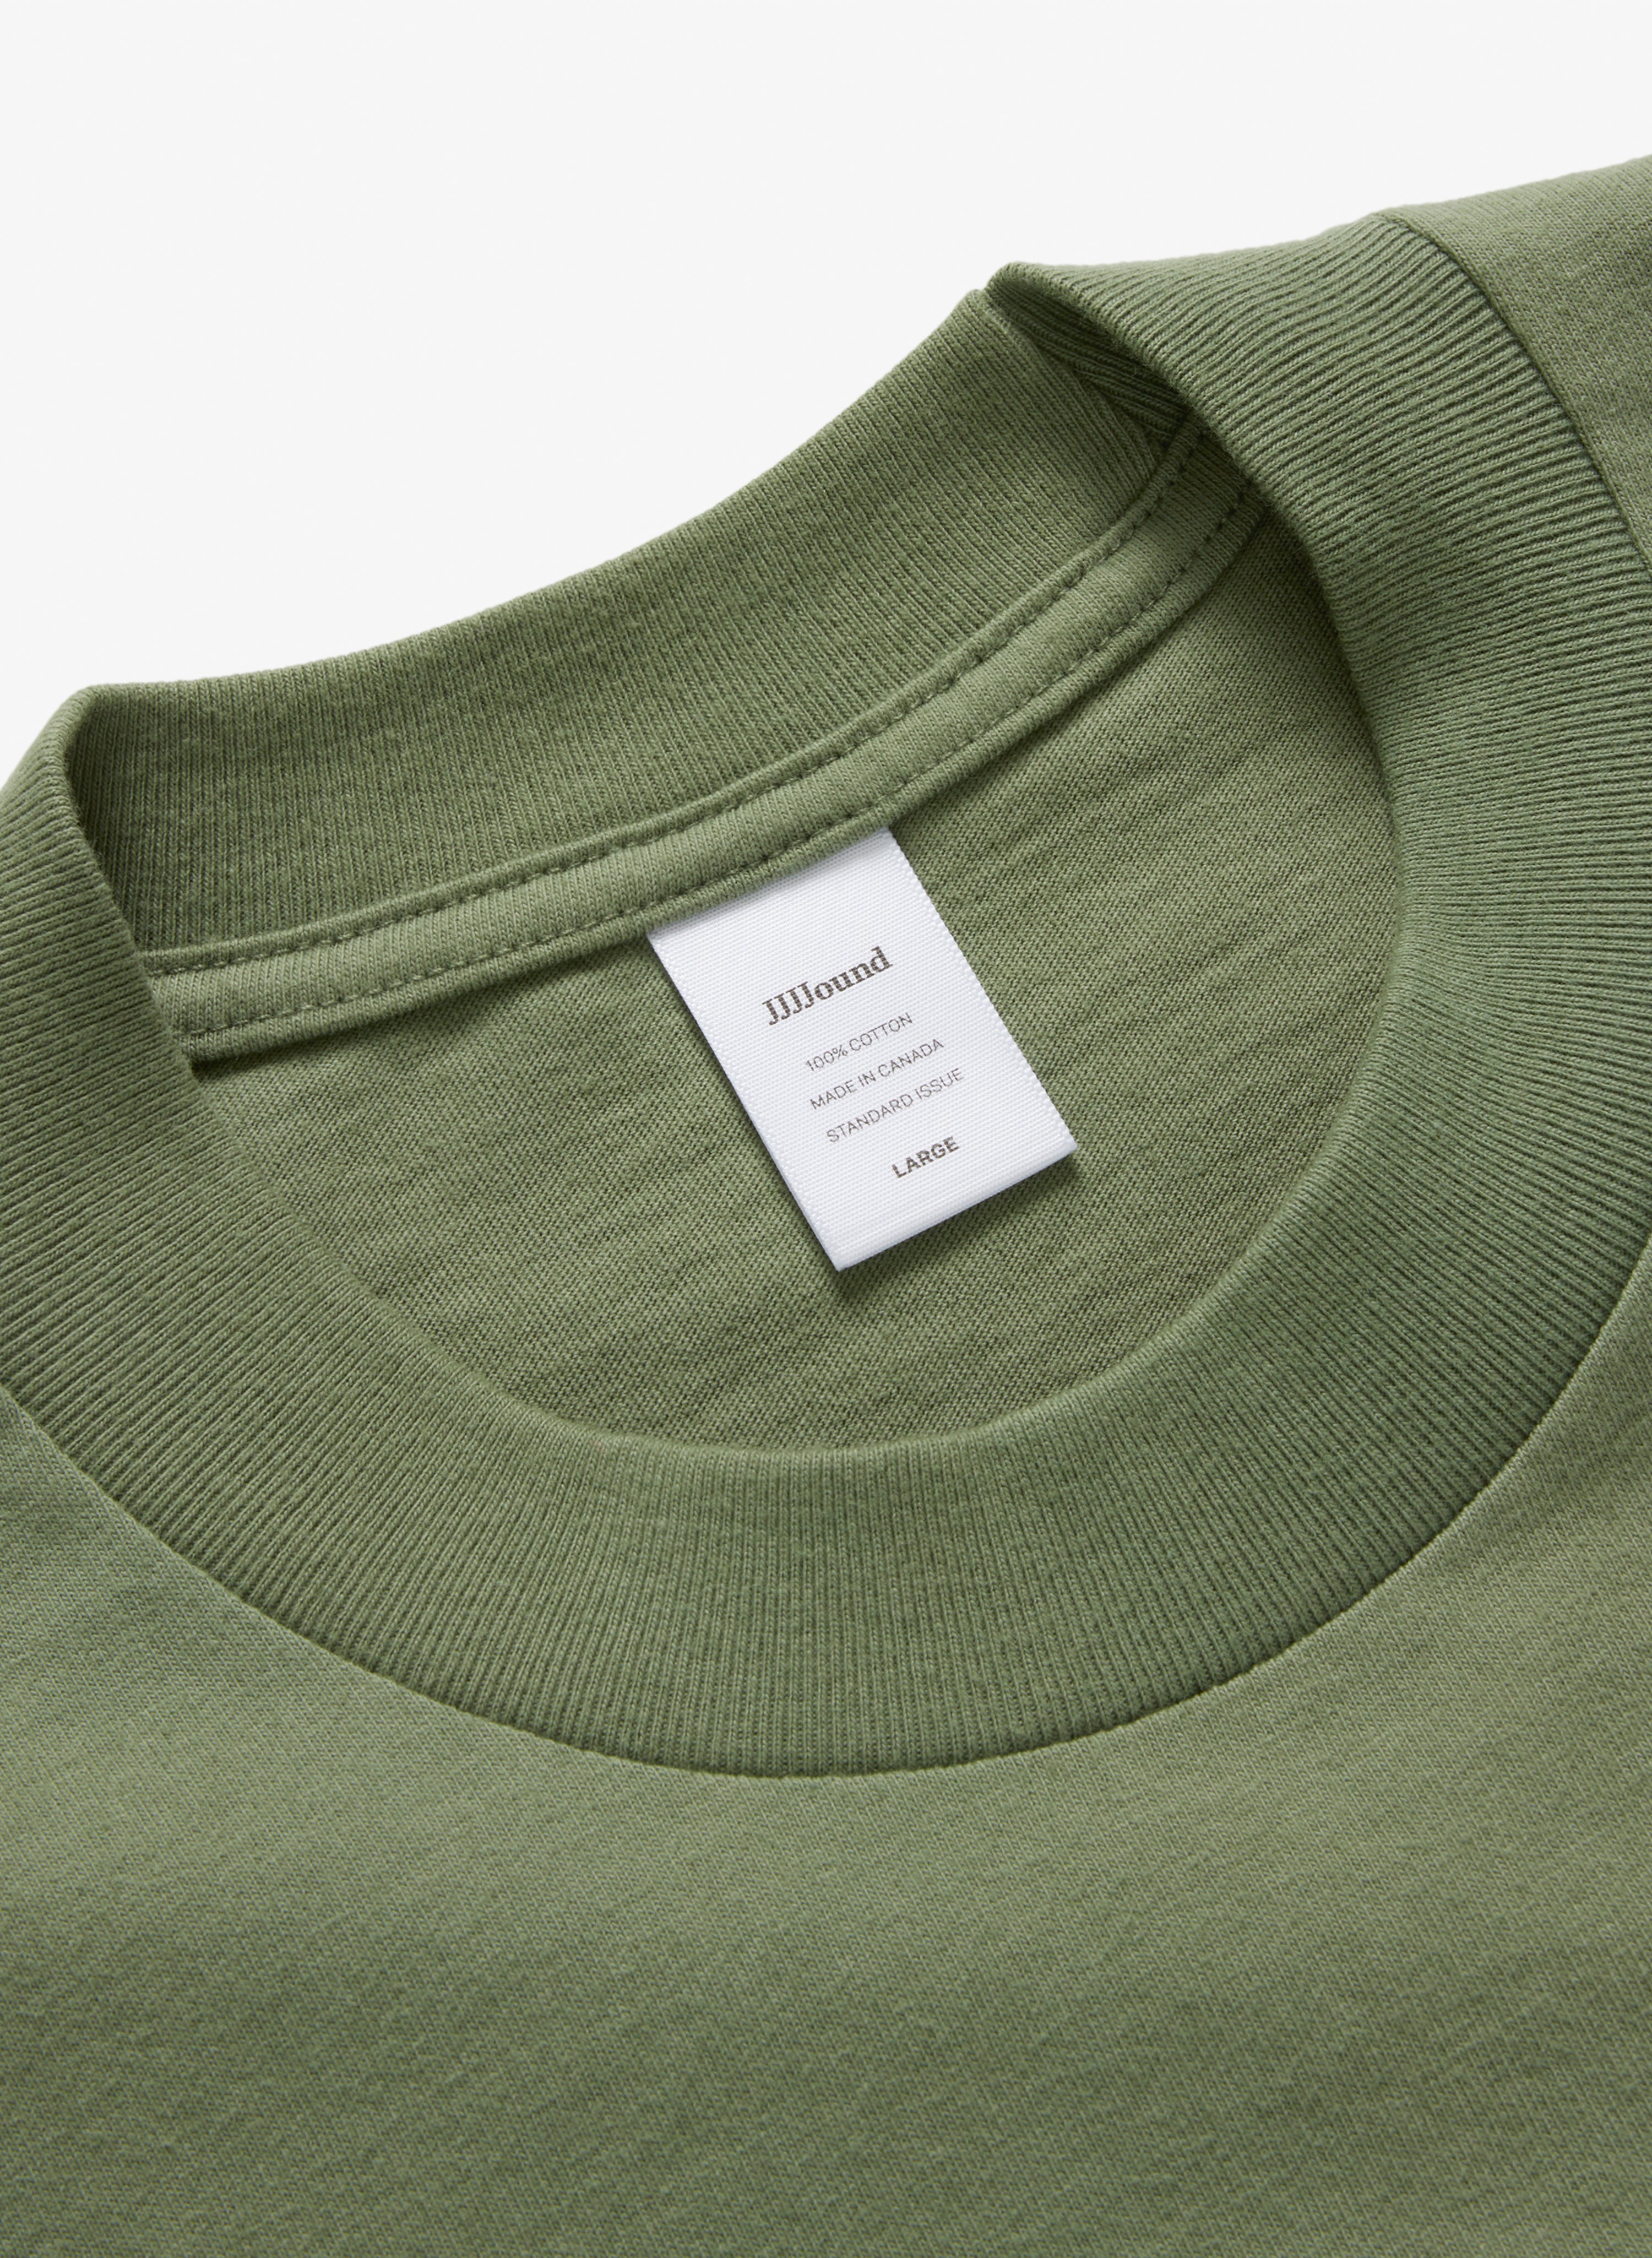 J90 T-Shirt - Olive – JJJJound